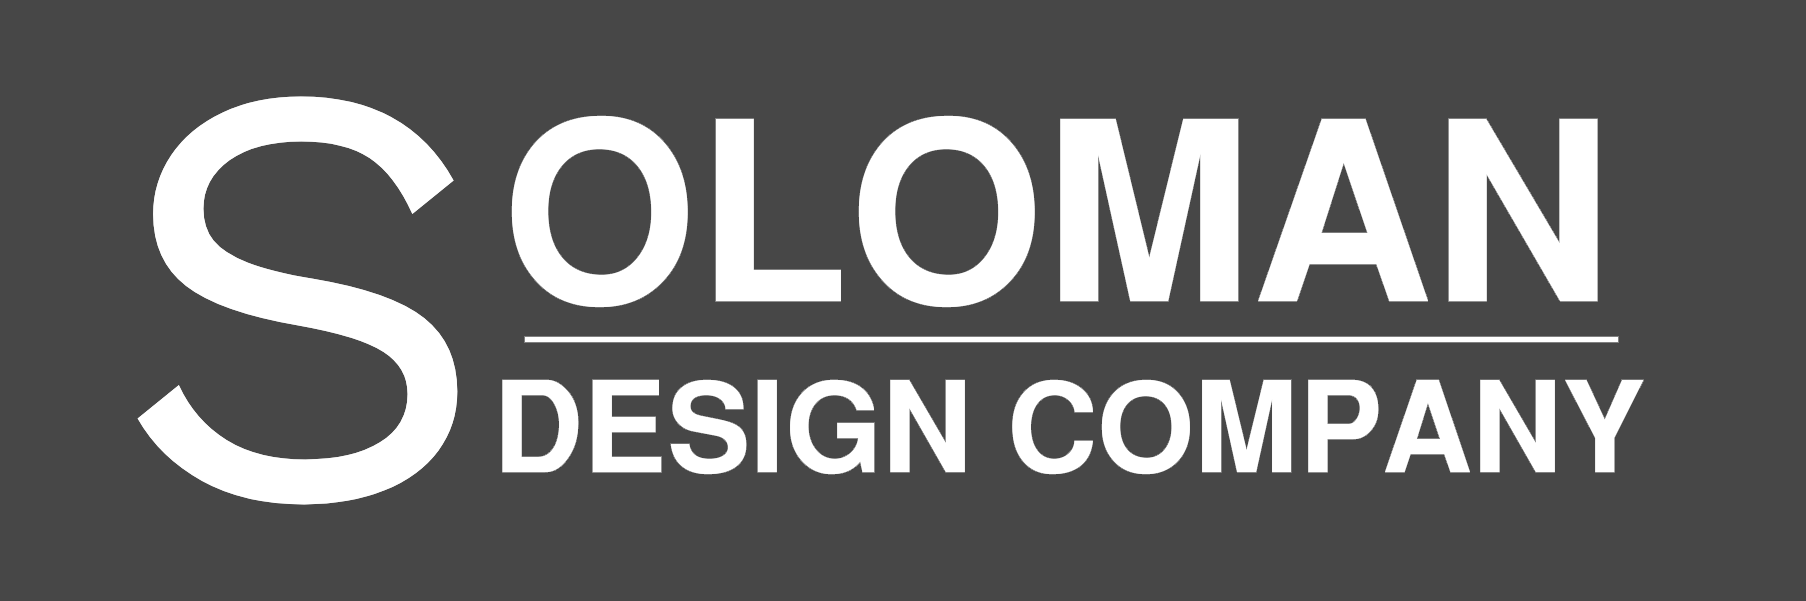 Soloman Design Company